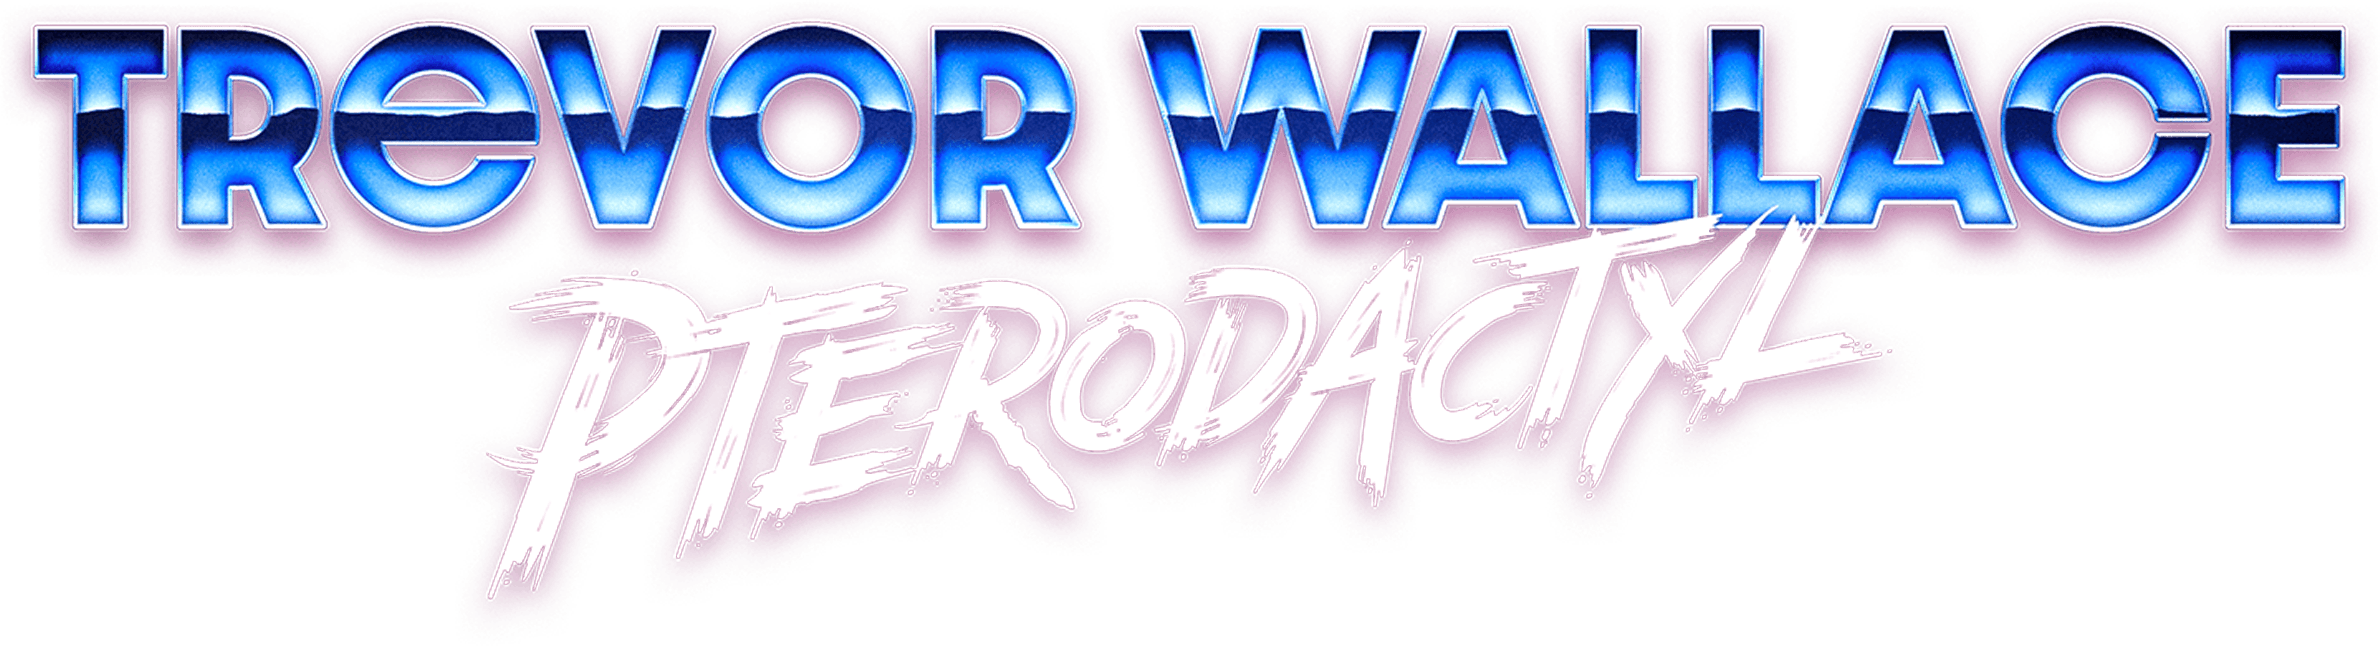 Trevor Wallace: Pterodactyl logo